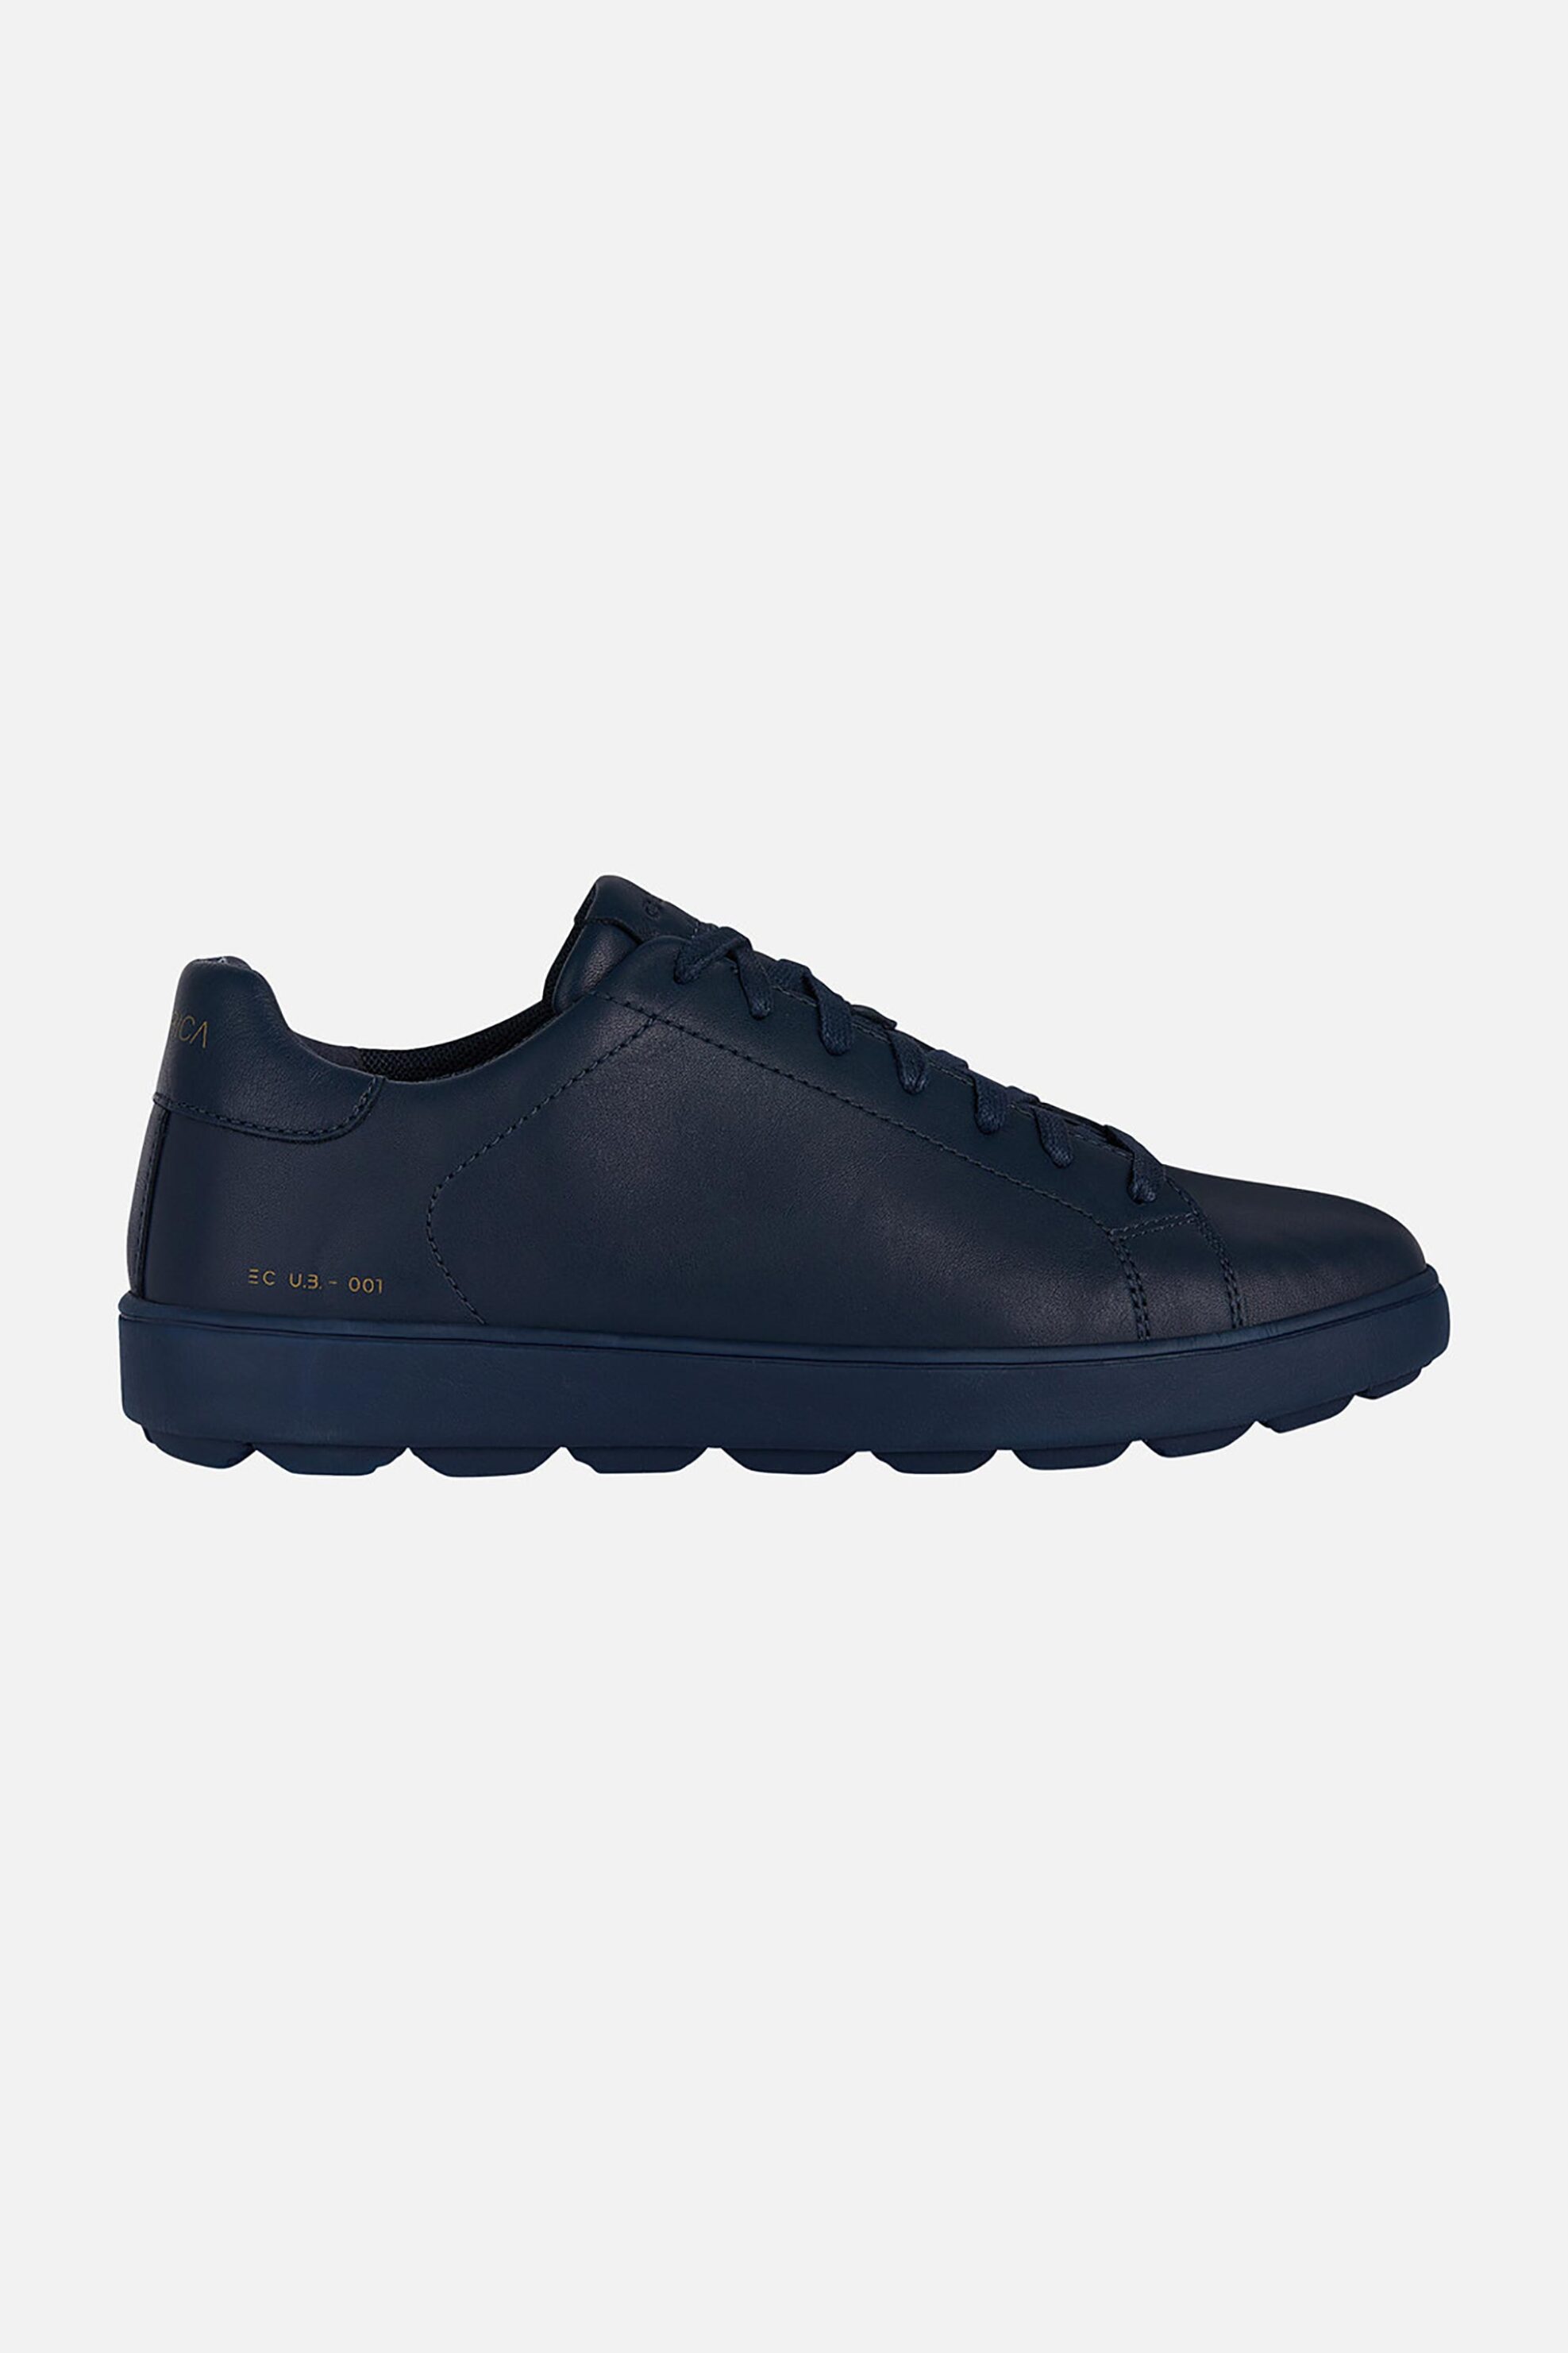 Ανδρική Μόδα > Ανδρικά Παπούτσια > Ανδρικά Sneakers Geox ανδρικά δερμάτινα sneakers "Spherica Ecub-1" - U45GPC00085C4002 Μπλε Σκούρο